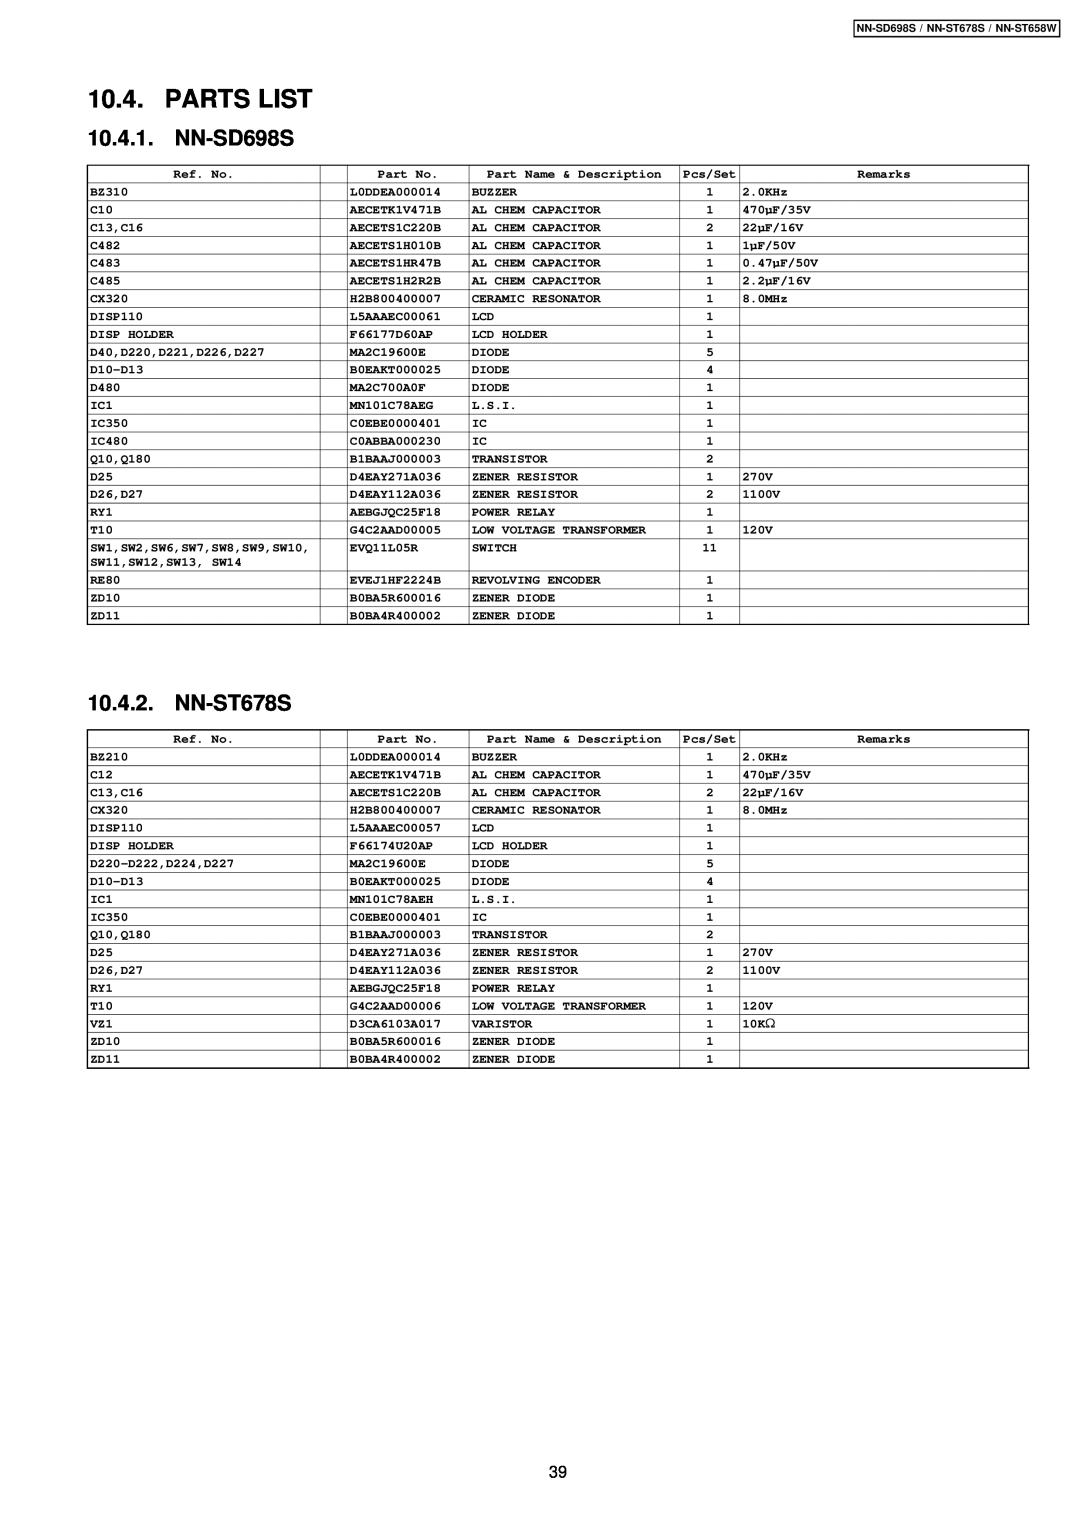 Panasonic NN-SD698S, NN-ST658W manual Parts List, 10.4.1, 10.4.2, NN-ST678S 